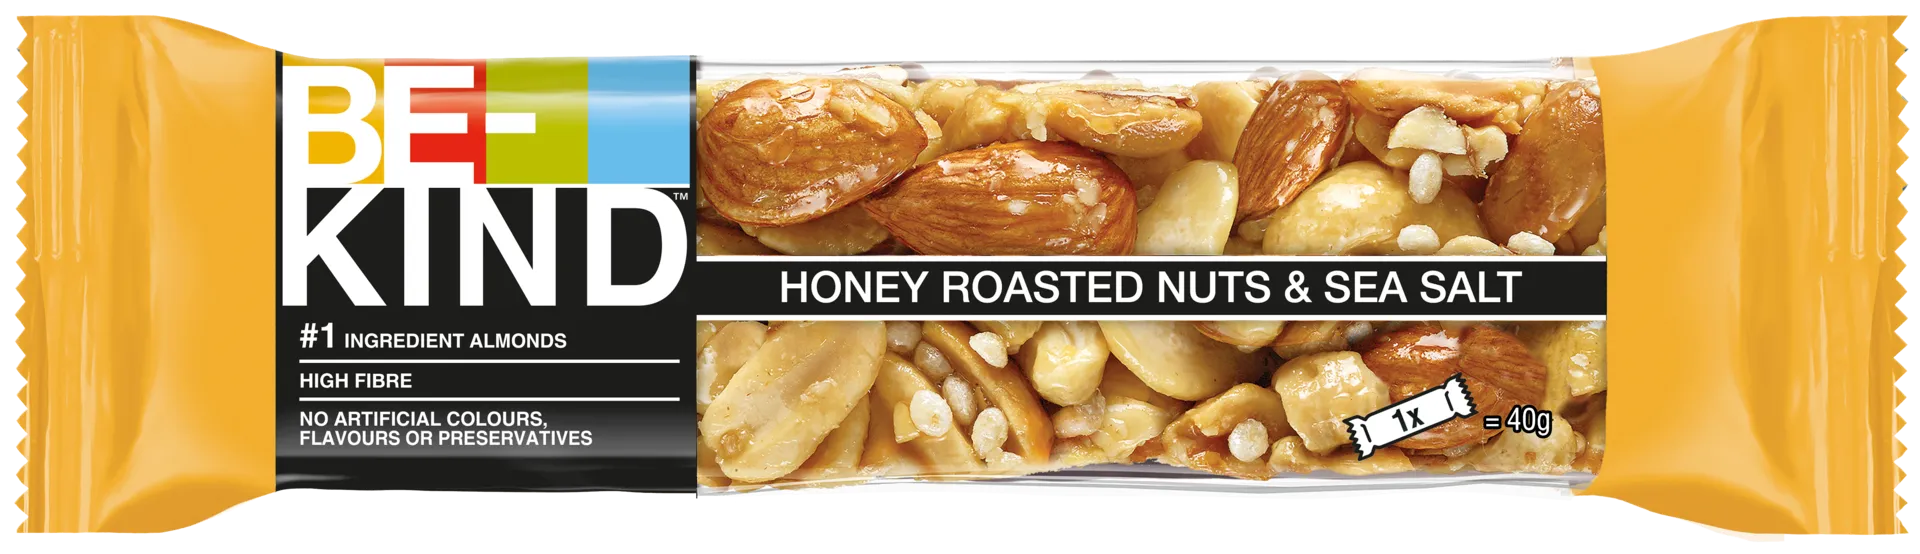 BE-KIND Honey Roasted Nuts & Sea Salt pähkinäpatukka (40 g)